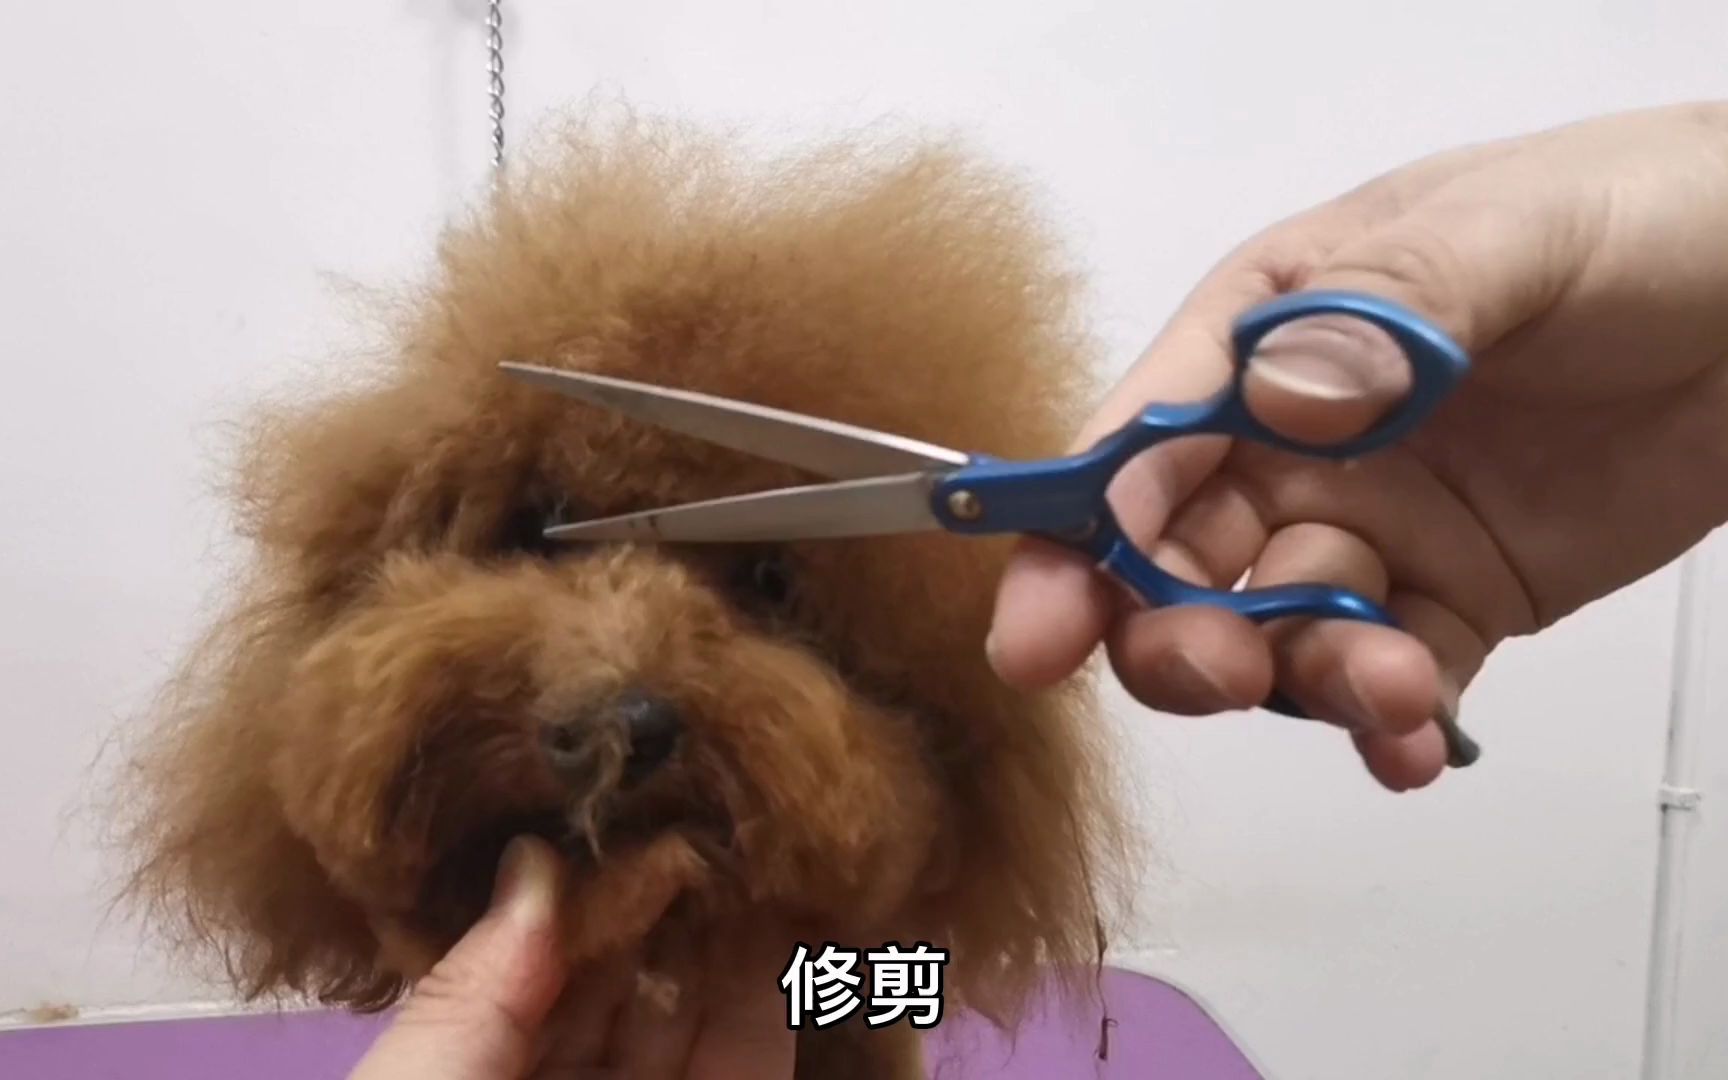 宠物美容师教你如何修剪泰迪头,简单易学,剪完还以为换了一只狗